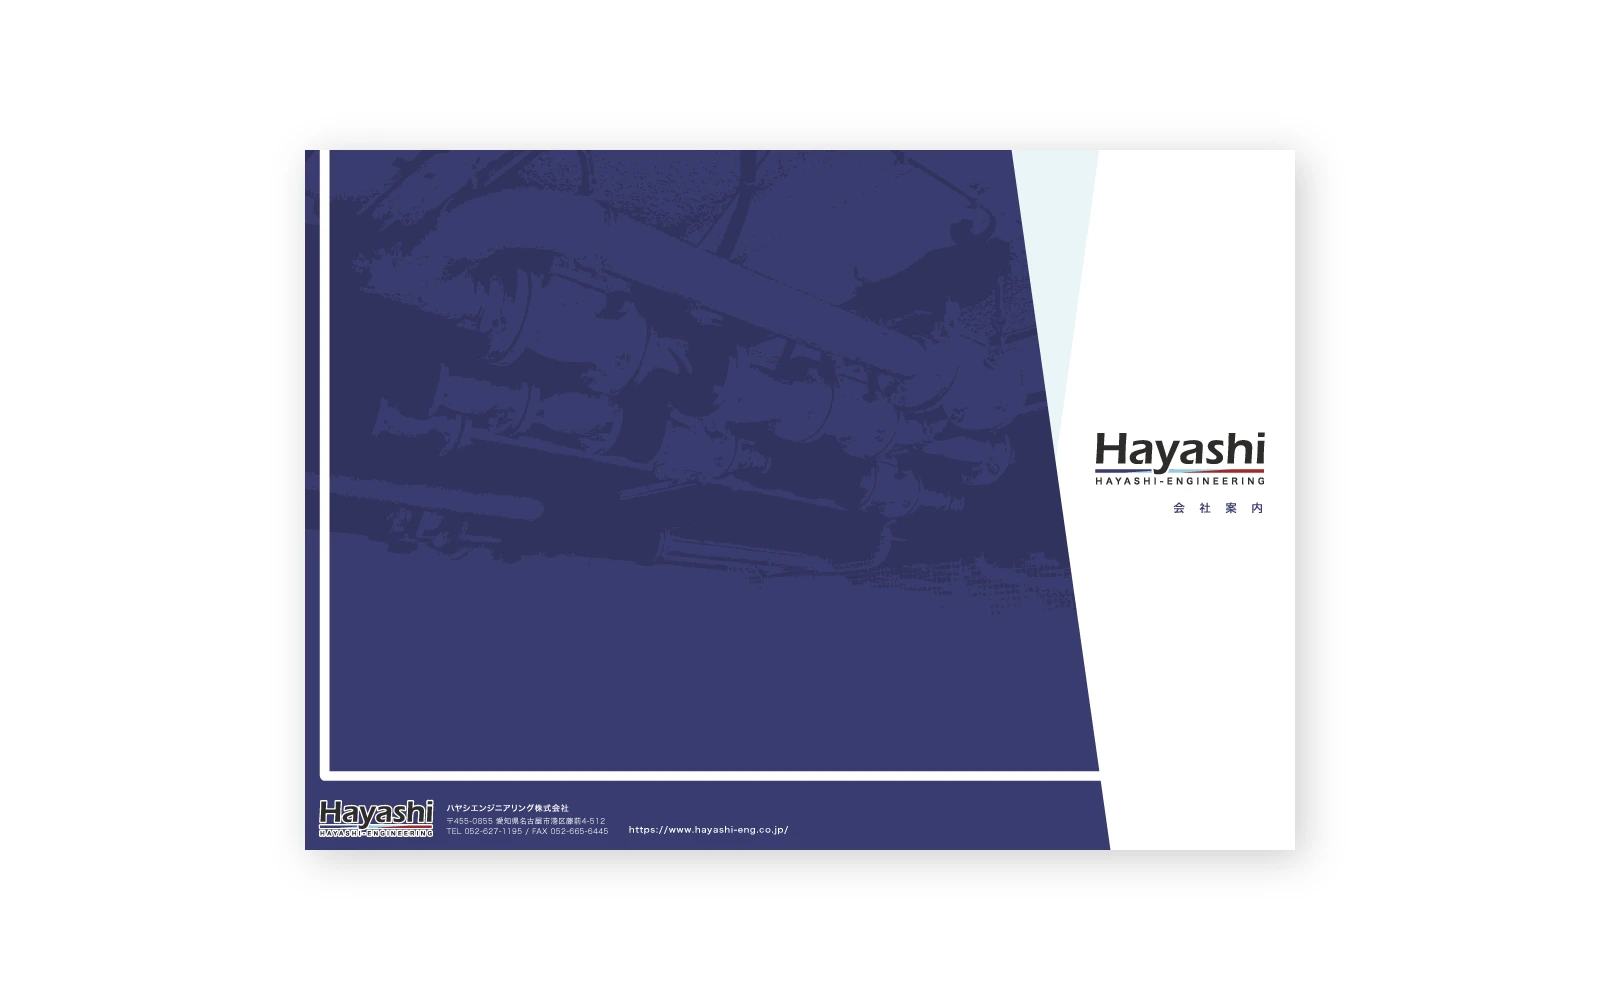 ハヤシエンジニアリング株式会社 / A4二つ折り会社案内パンフレットデザイン